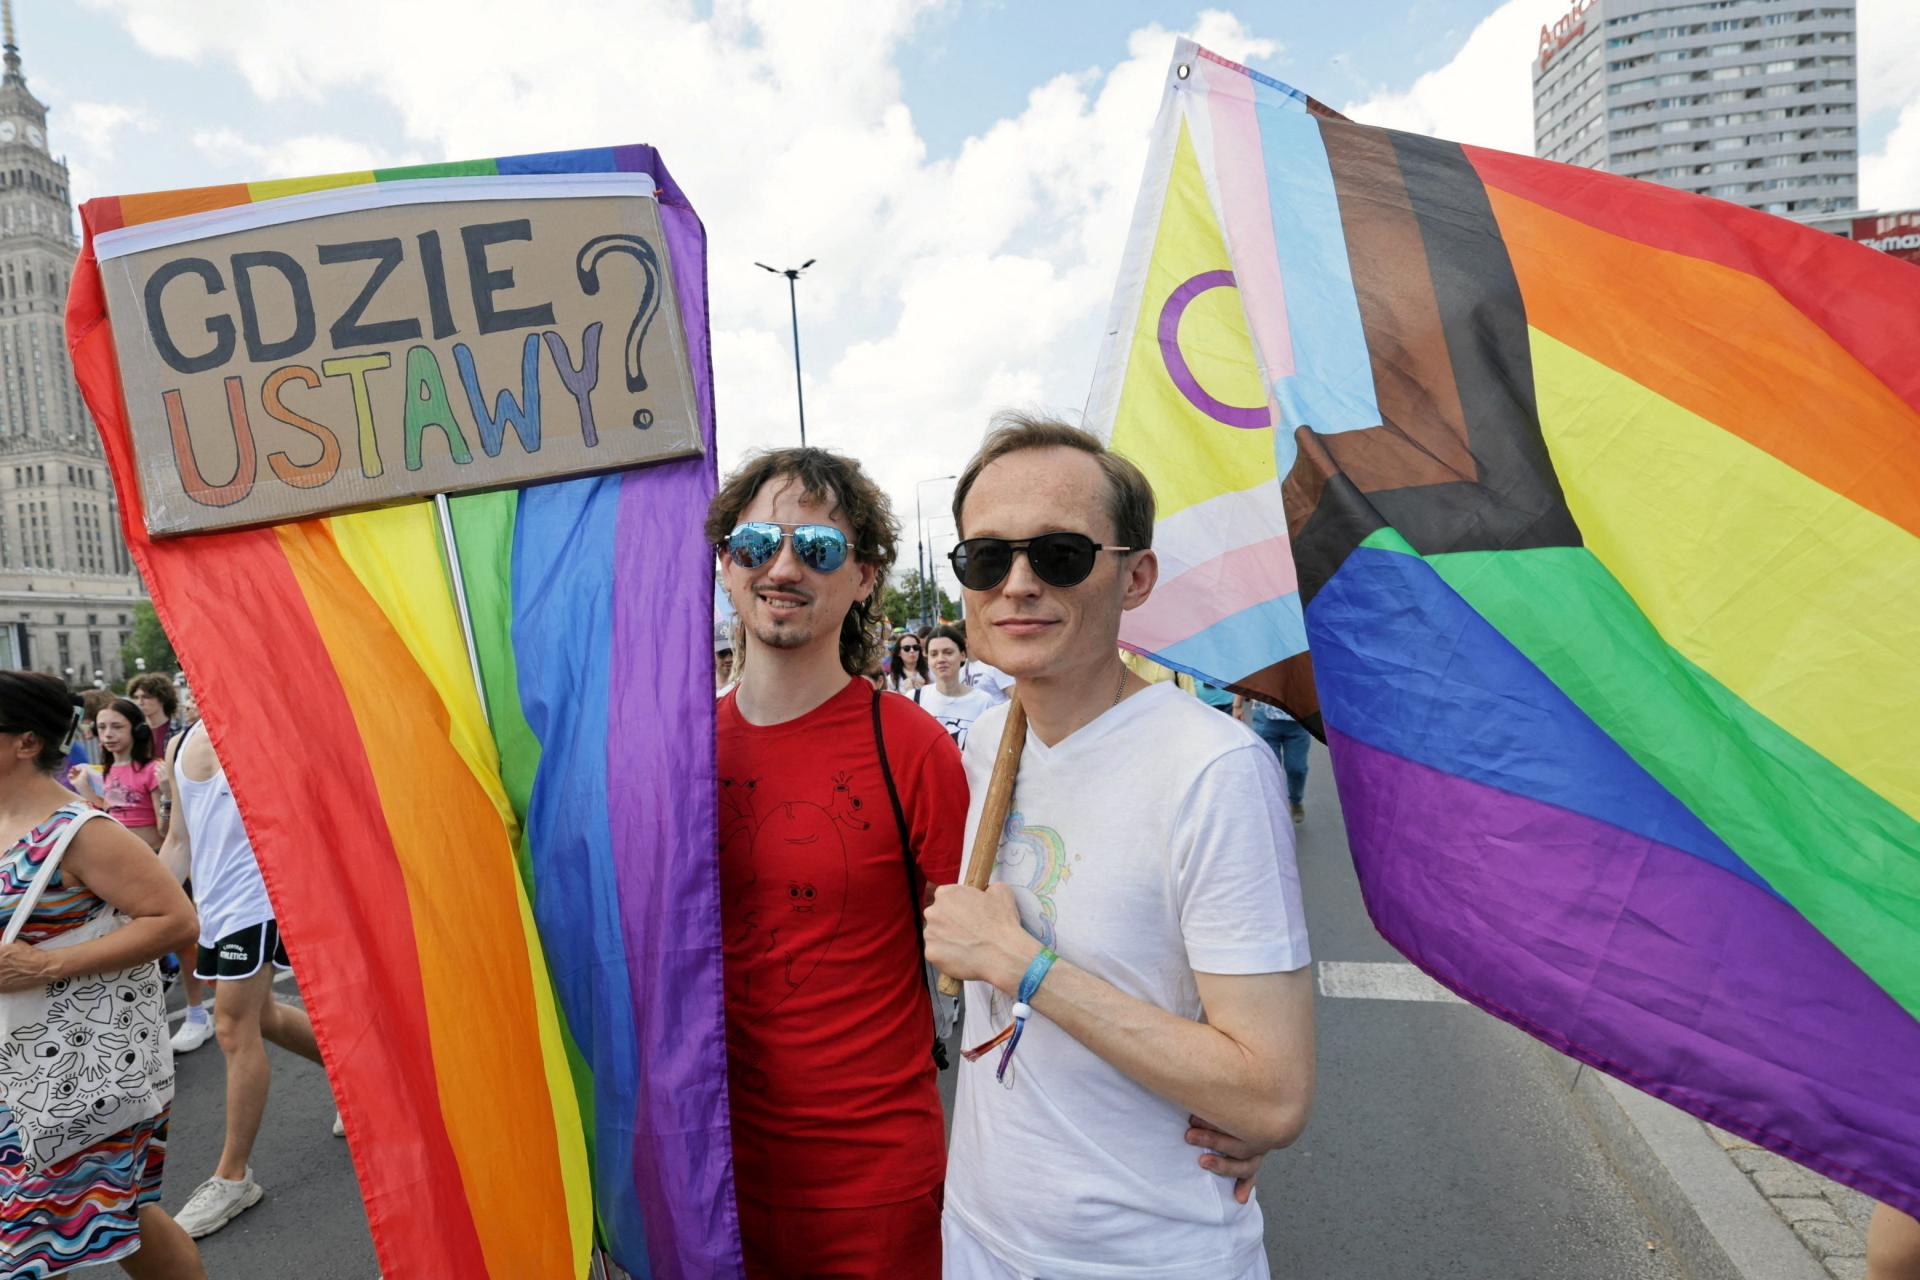 Poľsko má povinnosť legalizovať občianske zväzky párov rovnakého pohlavia, rozhodol európsky súd